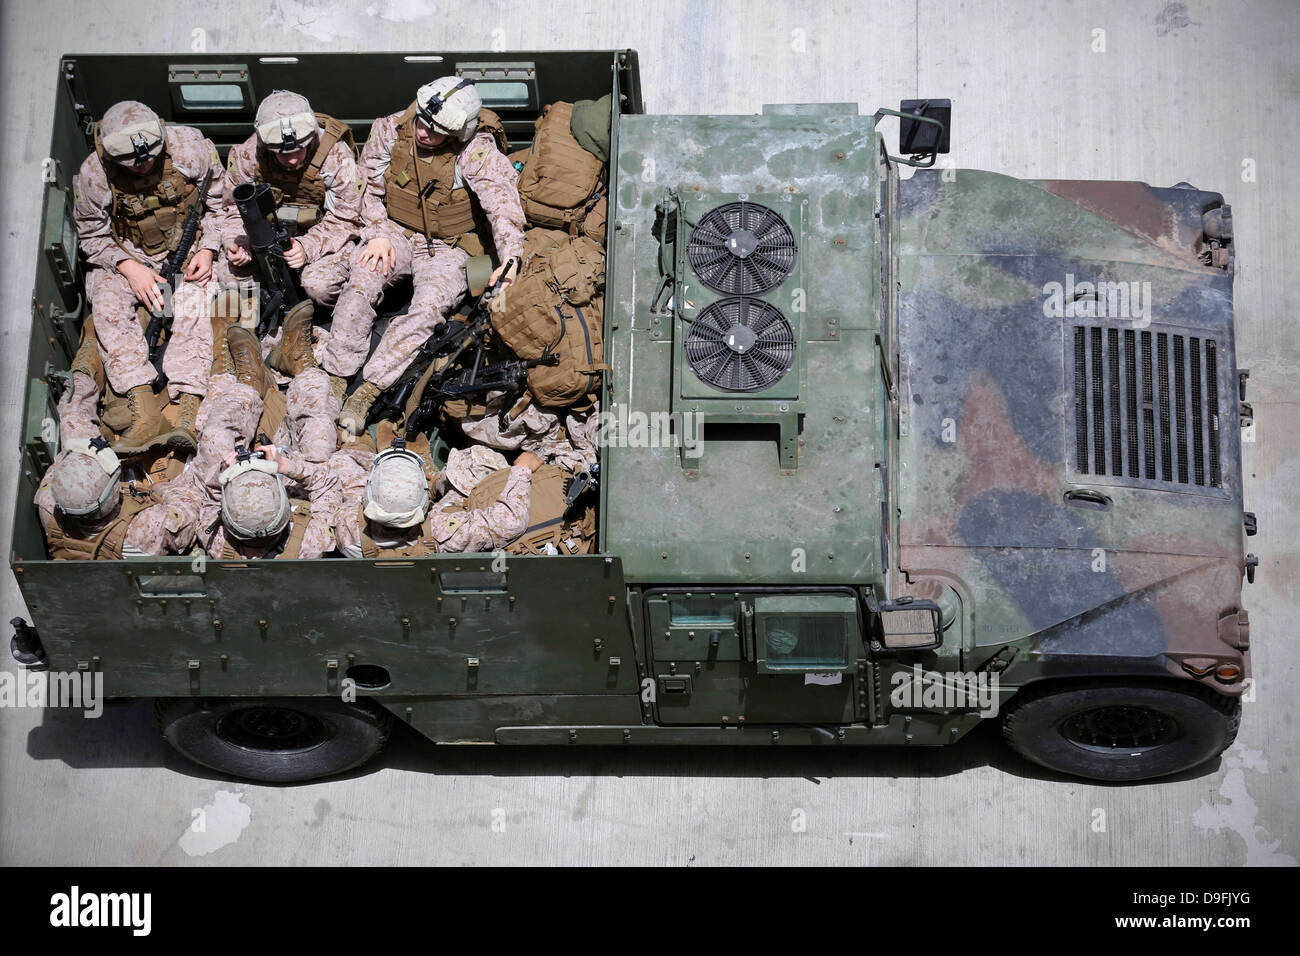 Marines americani dal 26 Marine Expeditionary Unit viaggiare nel retro di un Humvee durante l'esercizio desiderosi Lion 2013 giugno 6, 2013 in Aqaba Giordania. Il Presidente Obama ha annunciato che alcune truppe USA rimarranno in Giordania a causa della guerra civile in Siria. Foto Stock